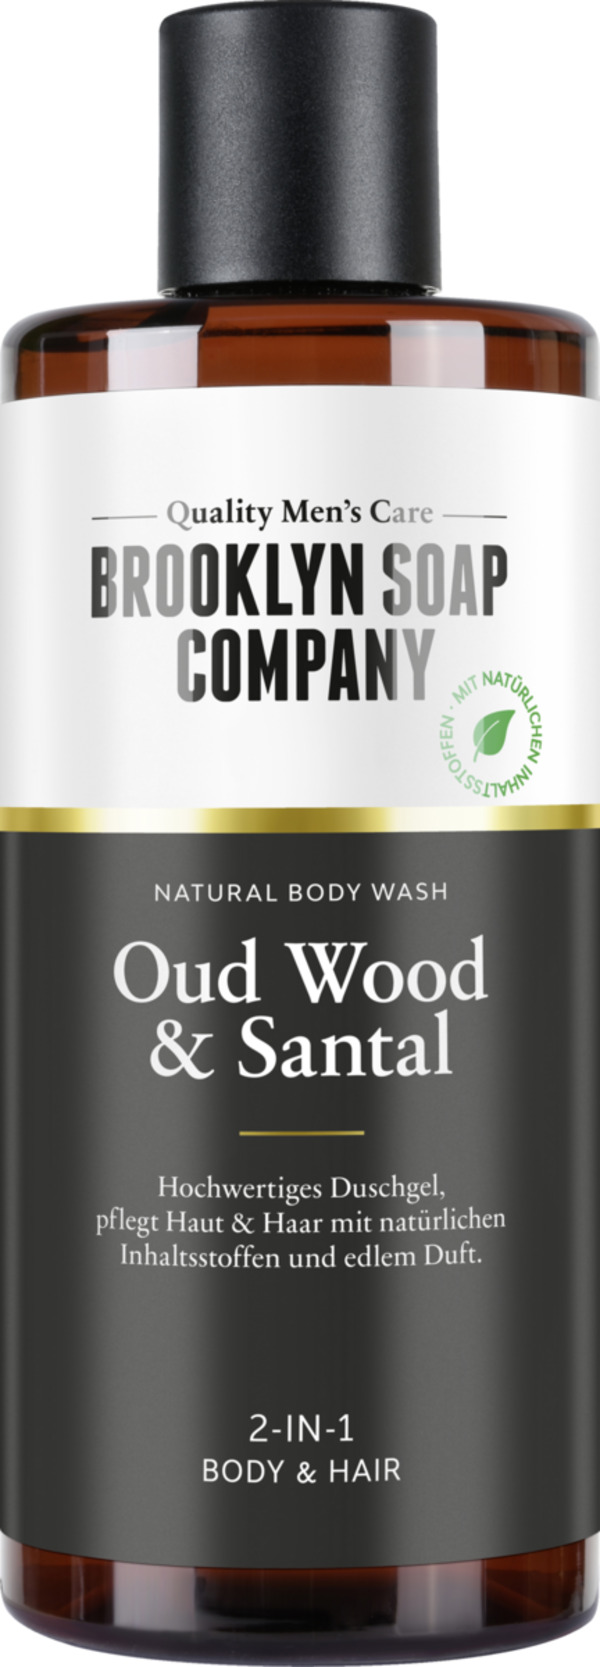 Bild 1 von Brooklyn Soap Company Body Wash Oud Wood & Santal, 300 ml